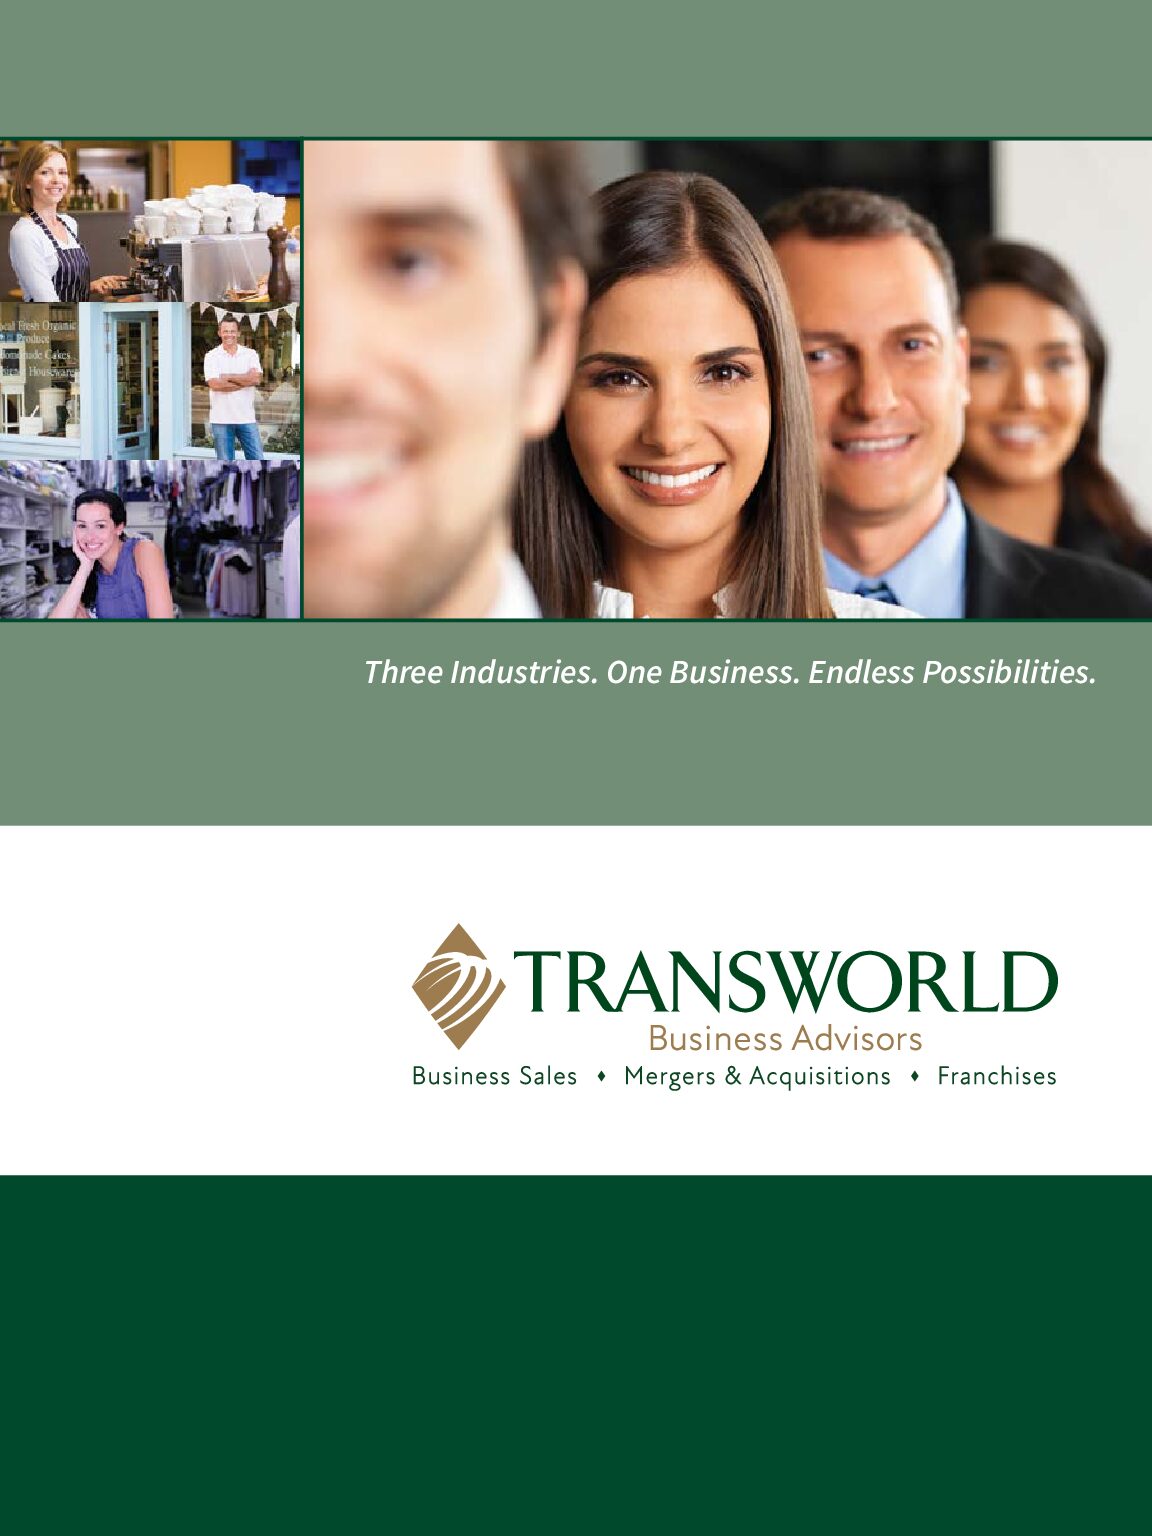 Transworld-Business-Advisors-Franchise-Broschüre